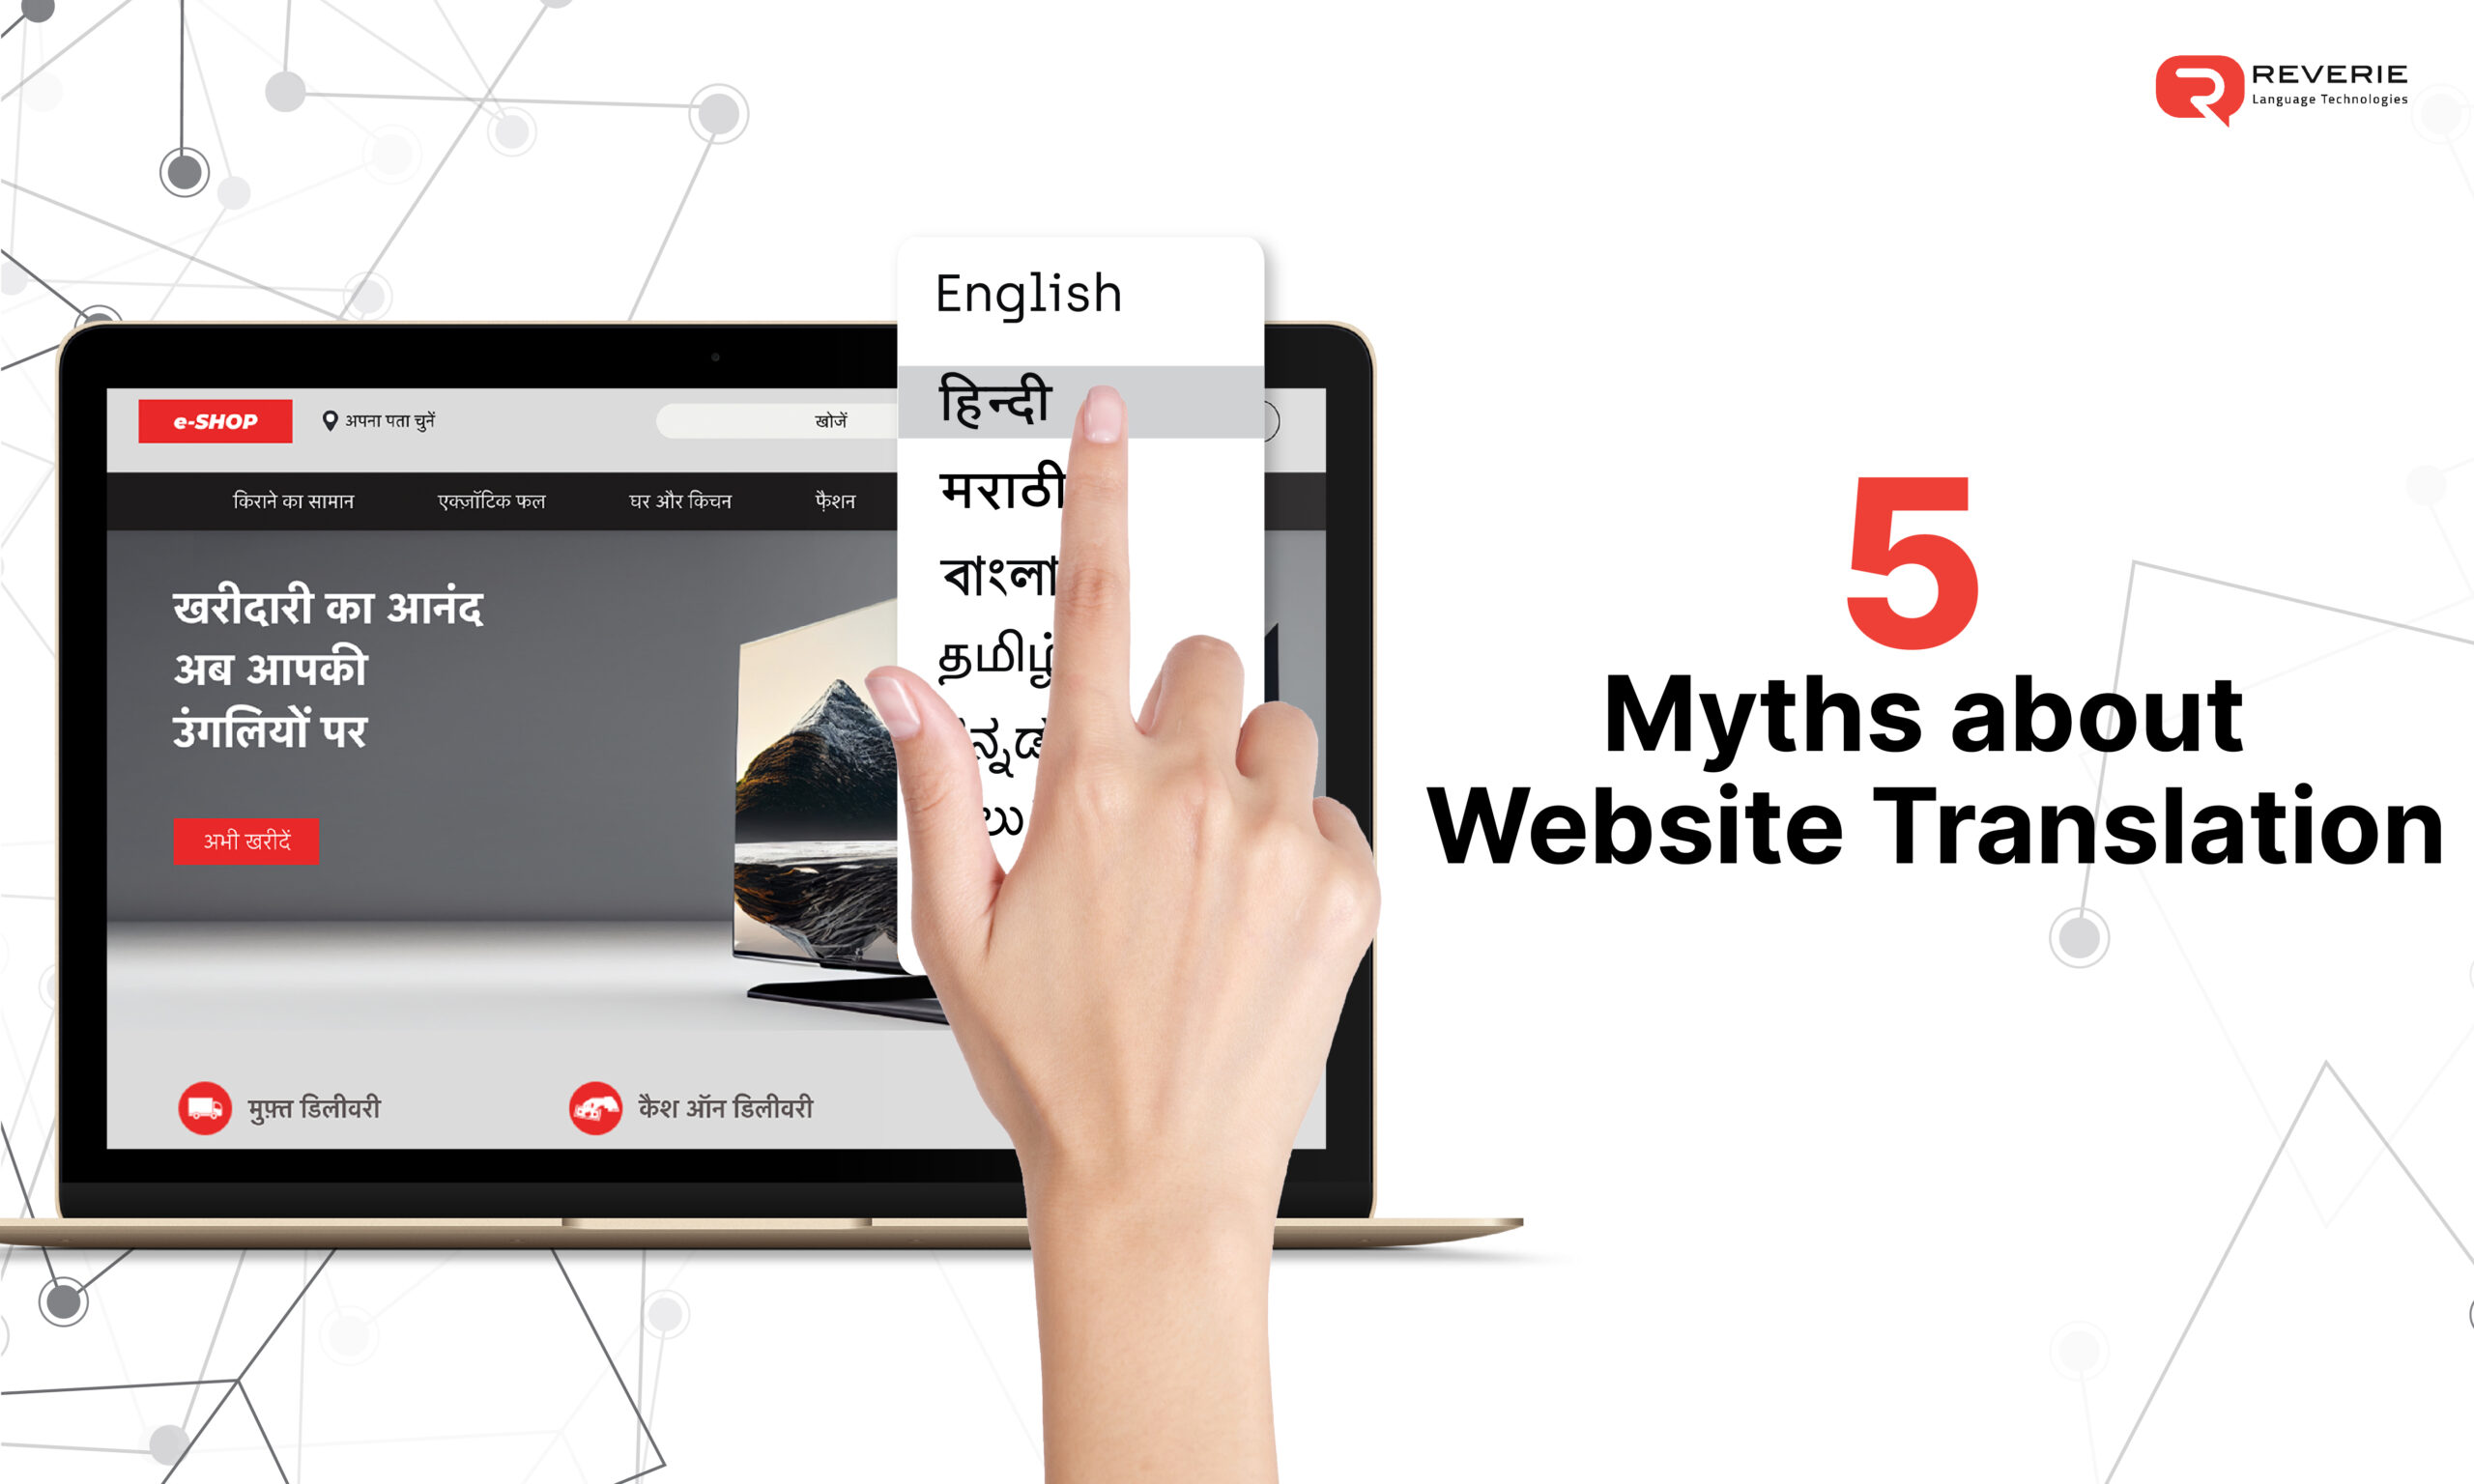 Myths about Website Translation